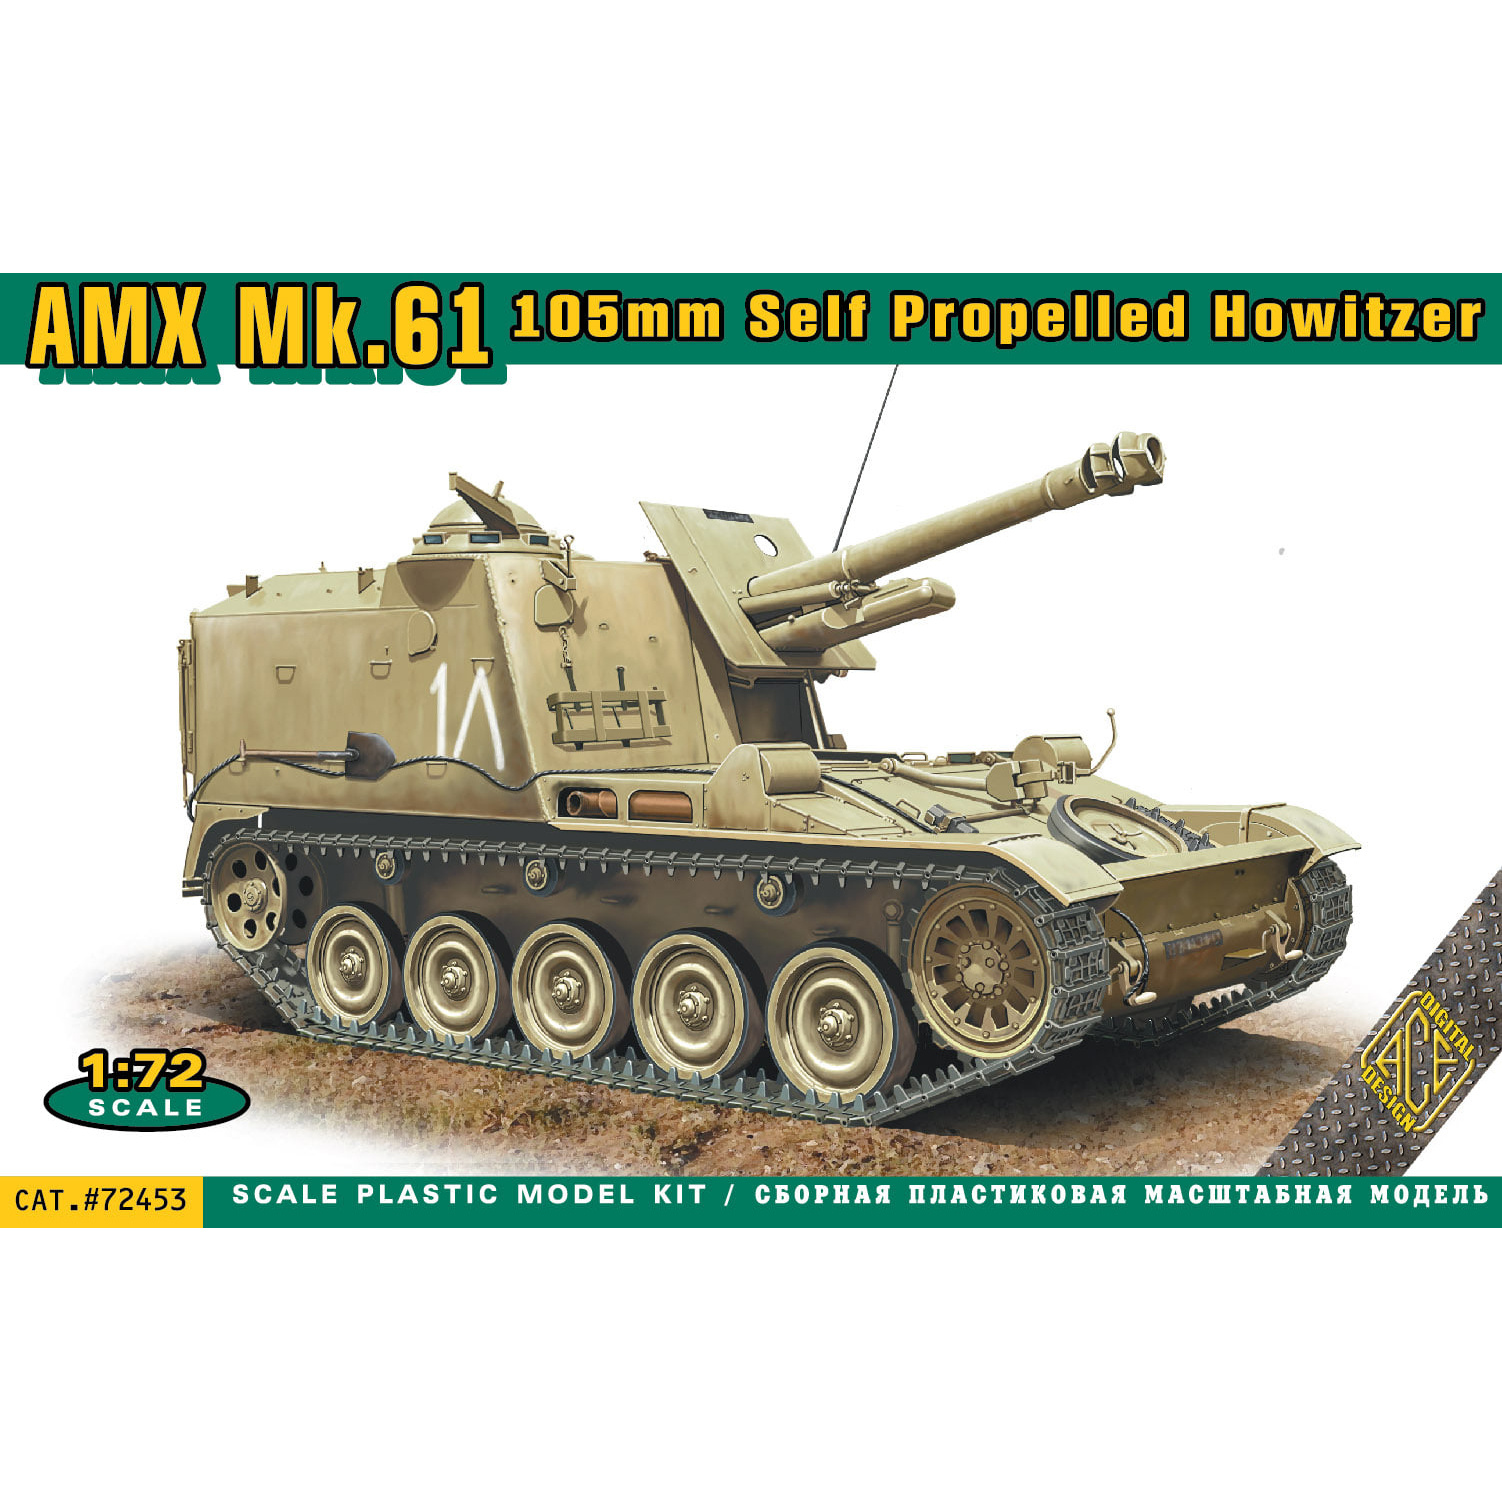 72453 ACE 1/72 Самоходная артиллерийская установка AMX MK.61